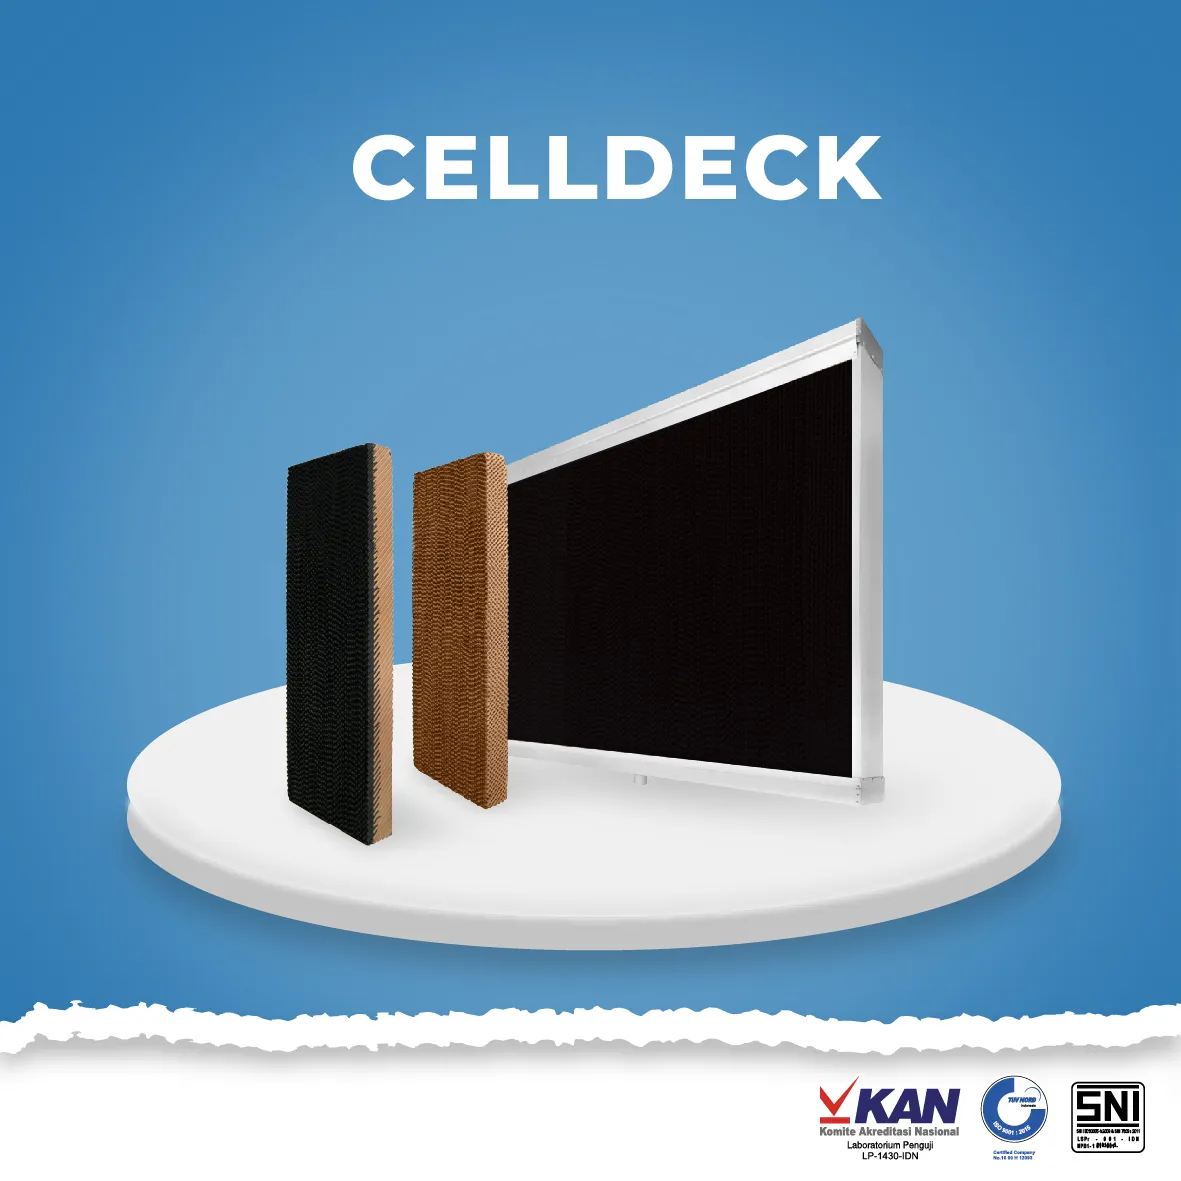  Celldeck non fan template cover website 06